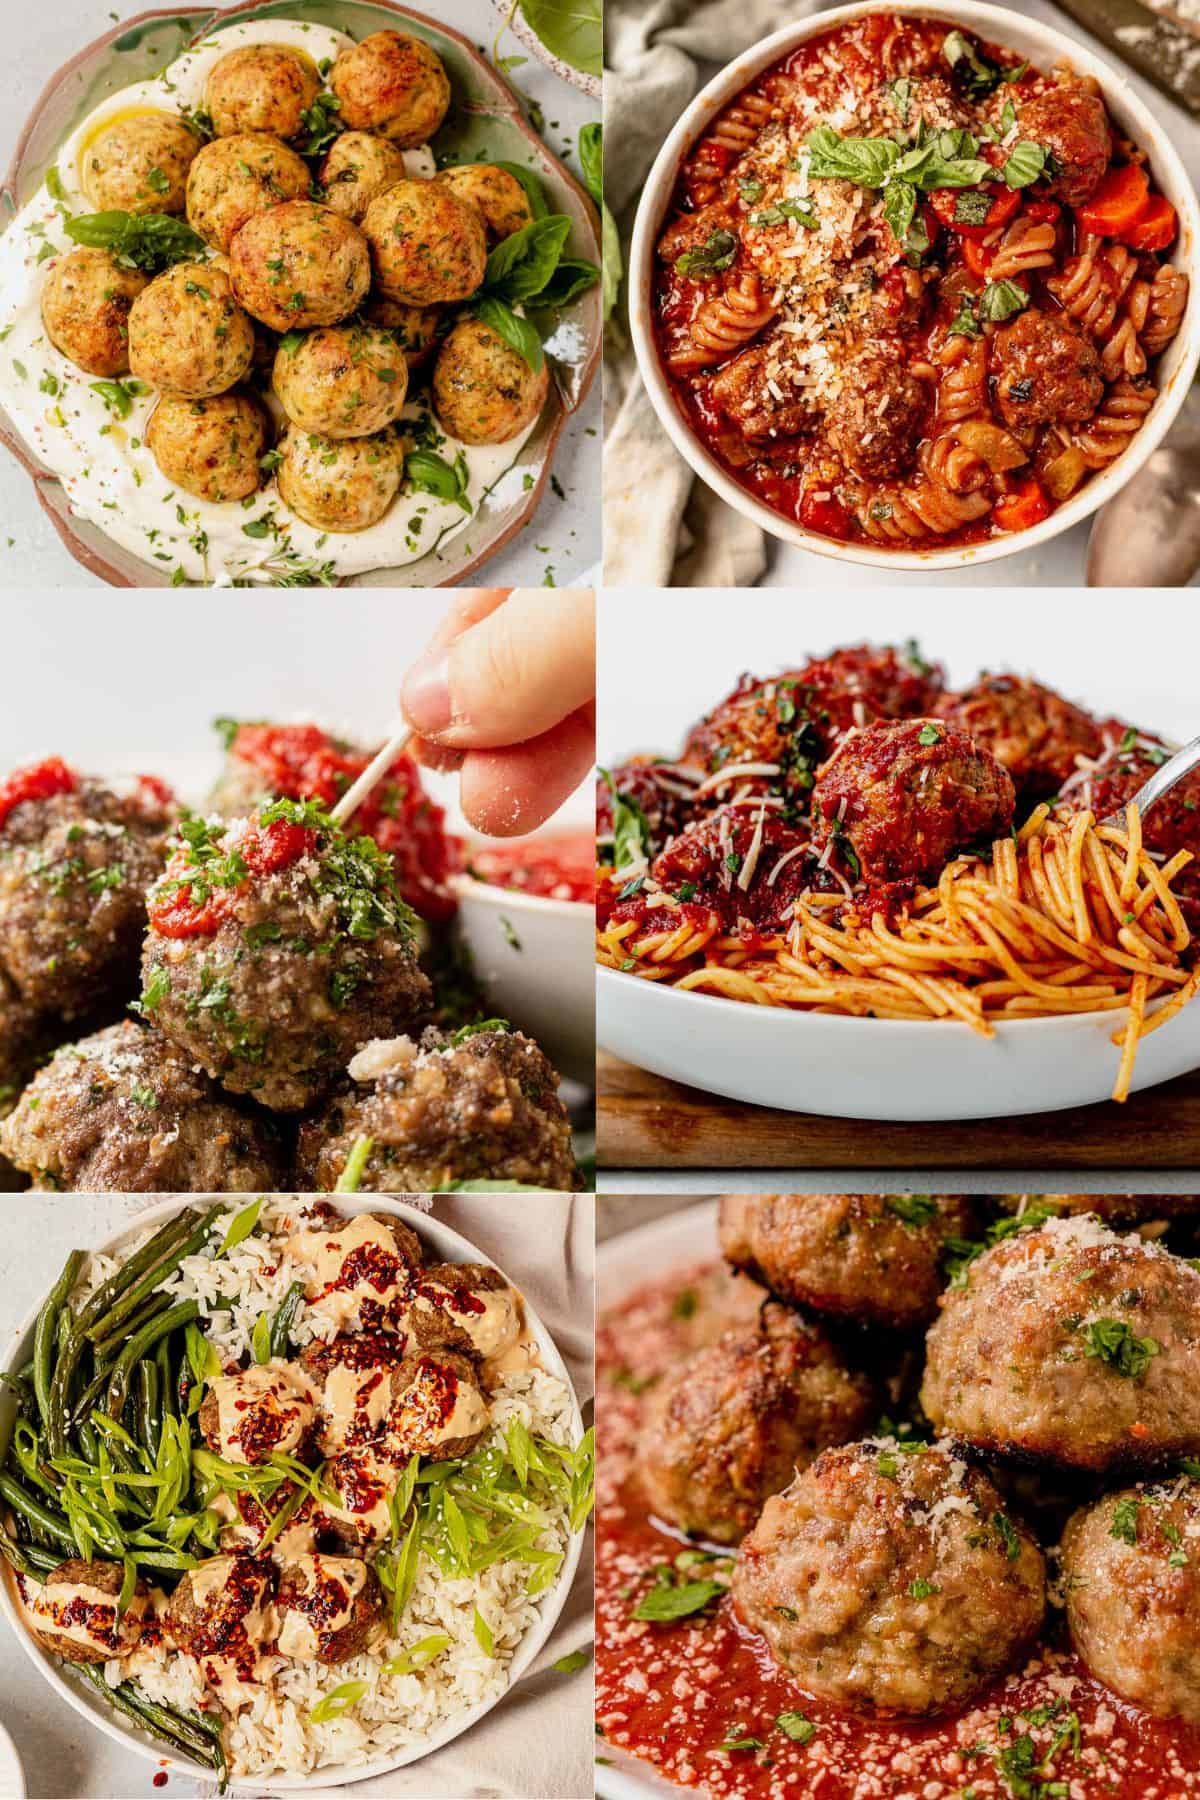 6 meatball dinner ideas